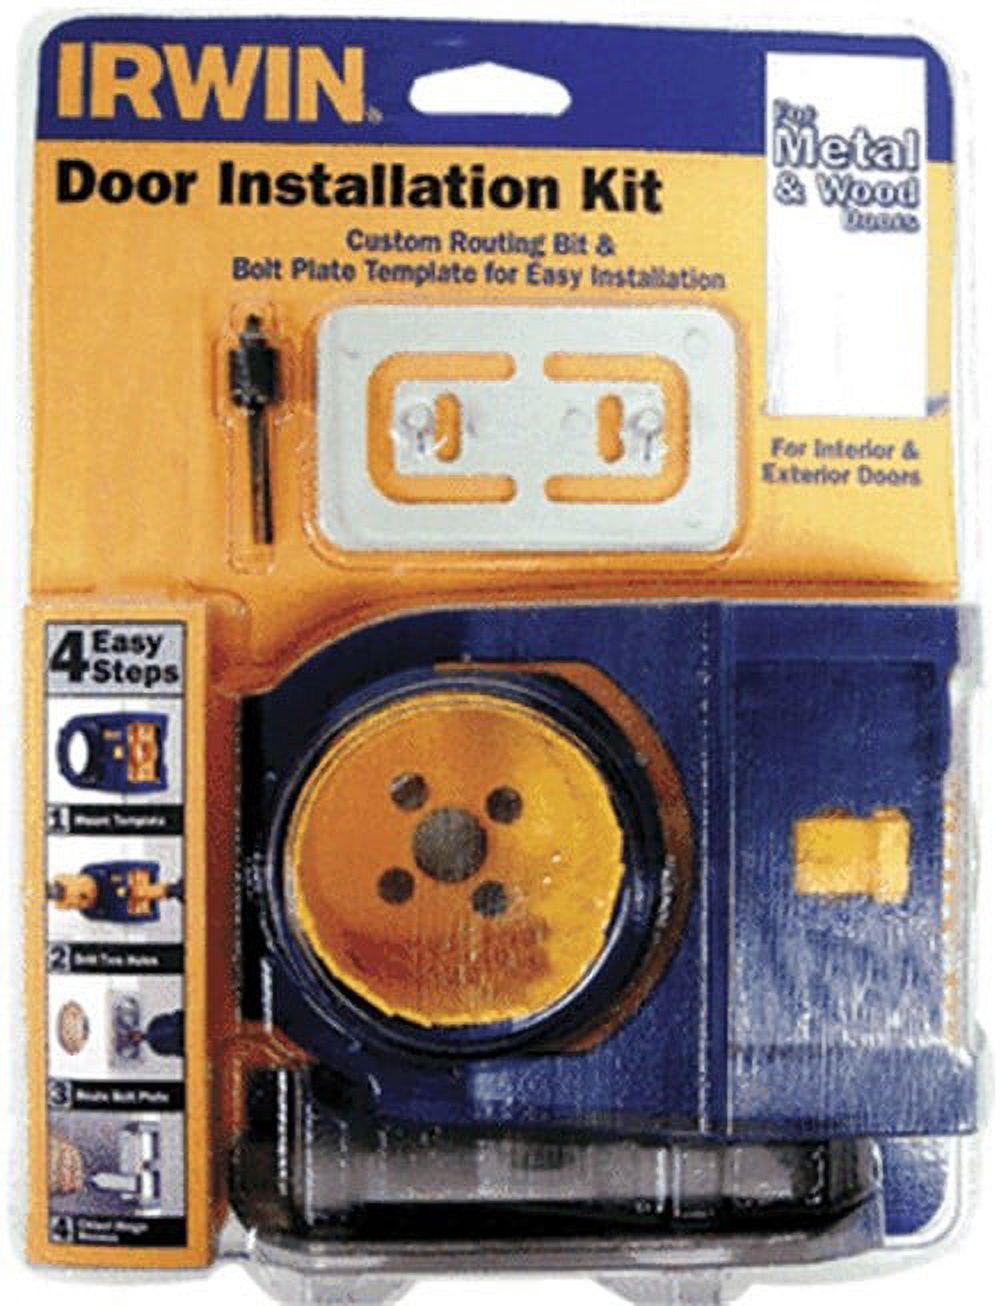 IRWIN 2-3/4 in. L Bi-Metal Door Lock Installation Kit 1 pc. - image 3 of 4